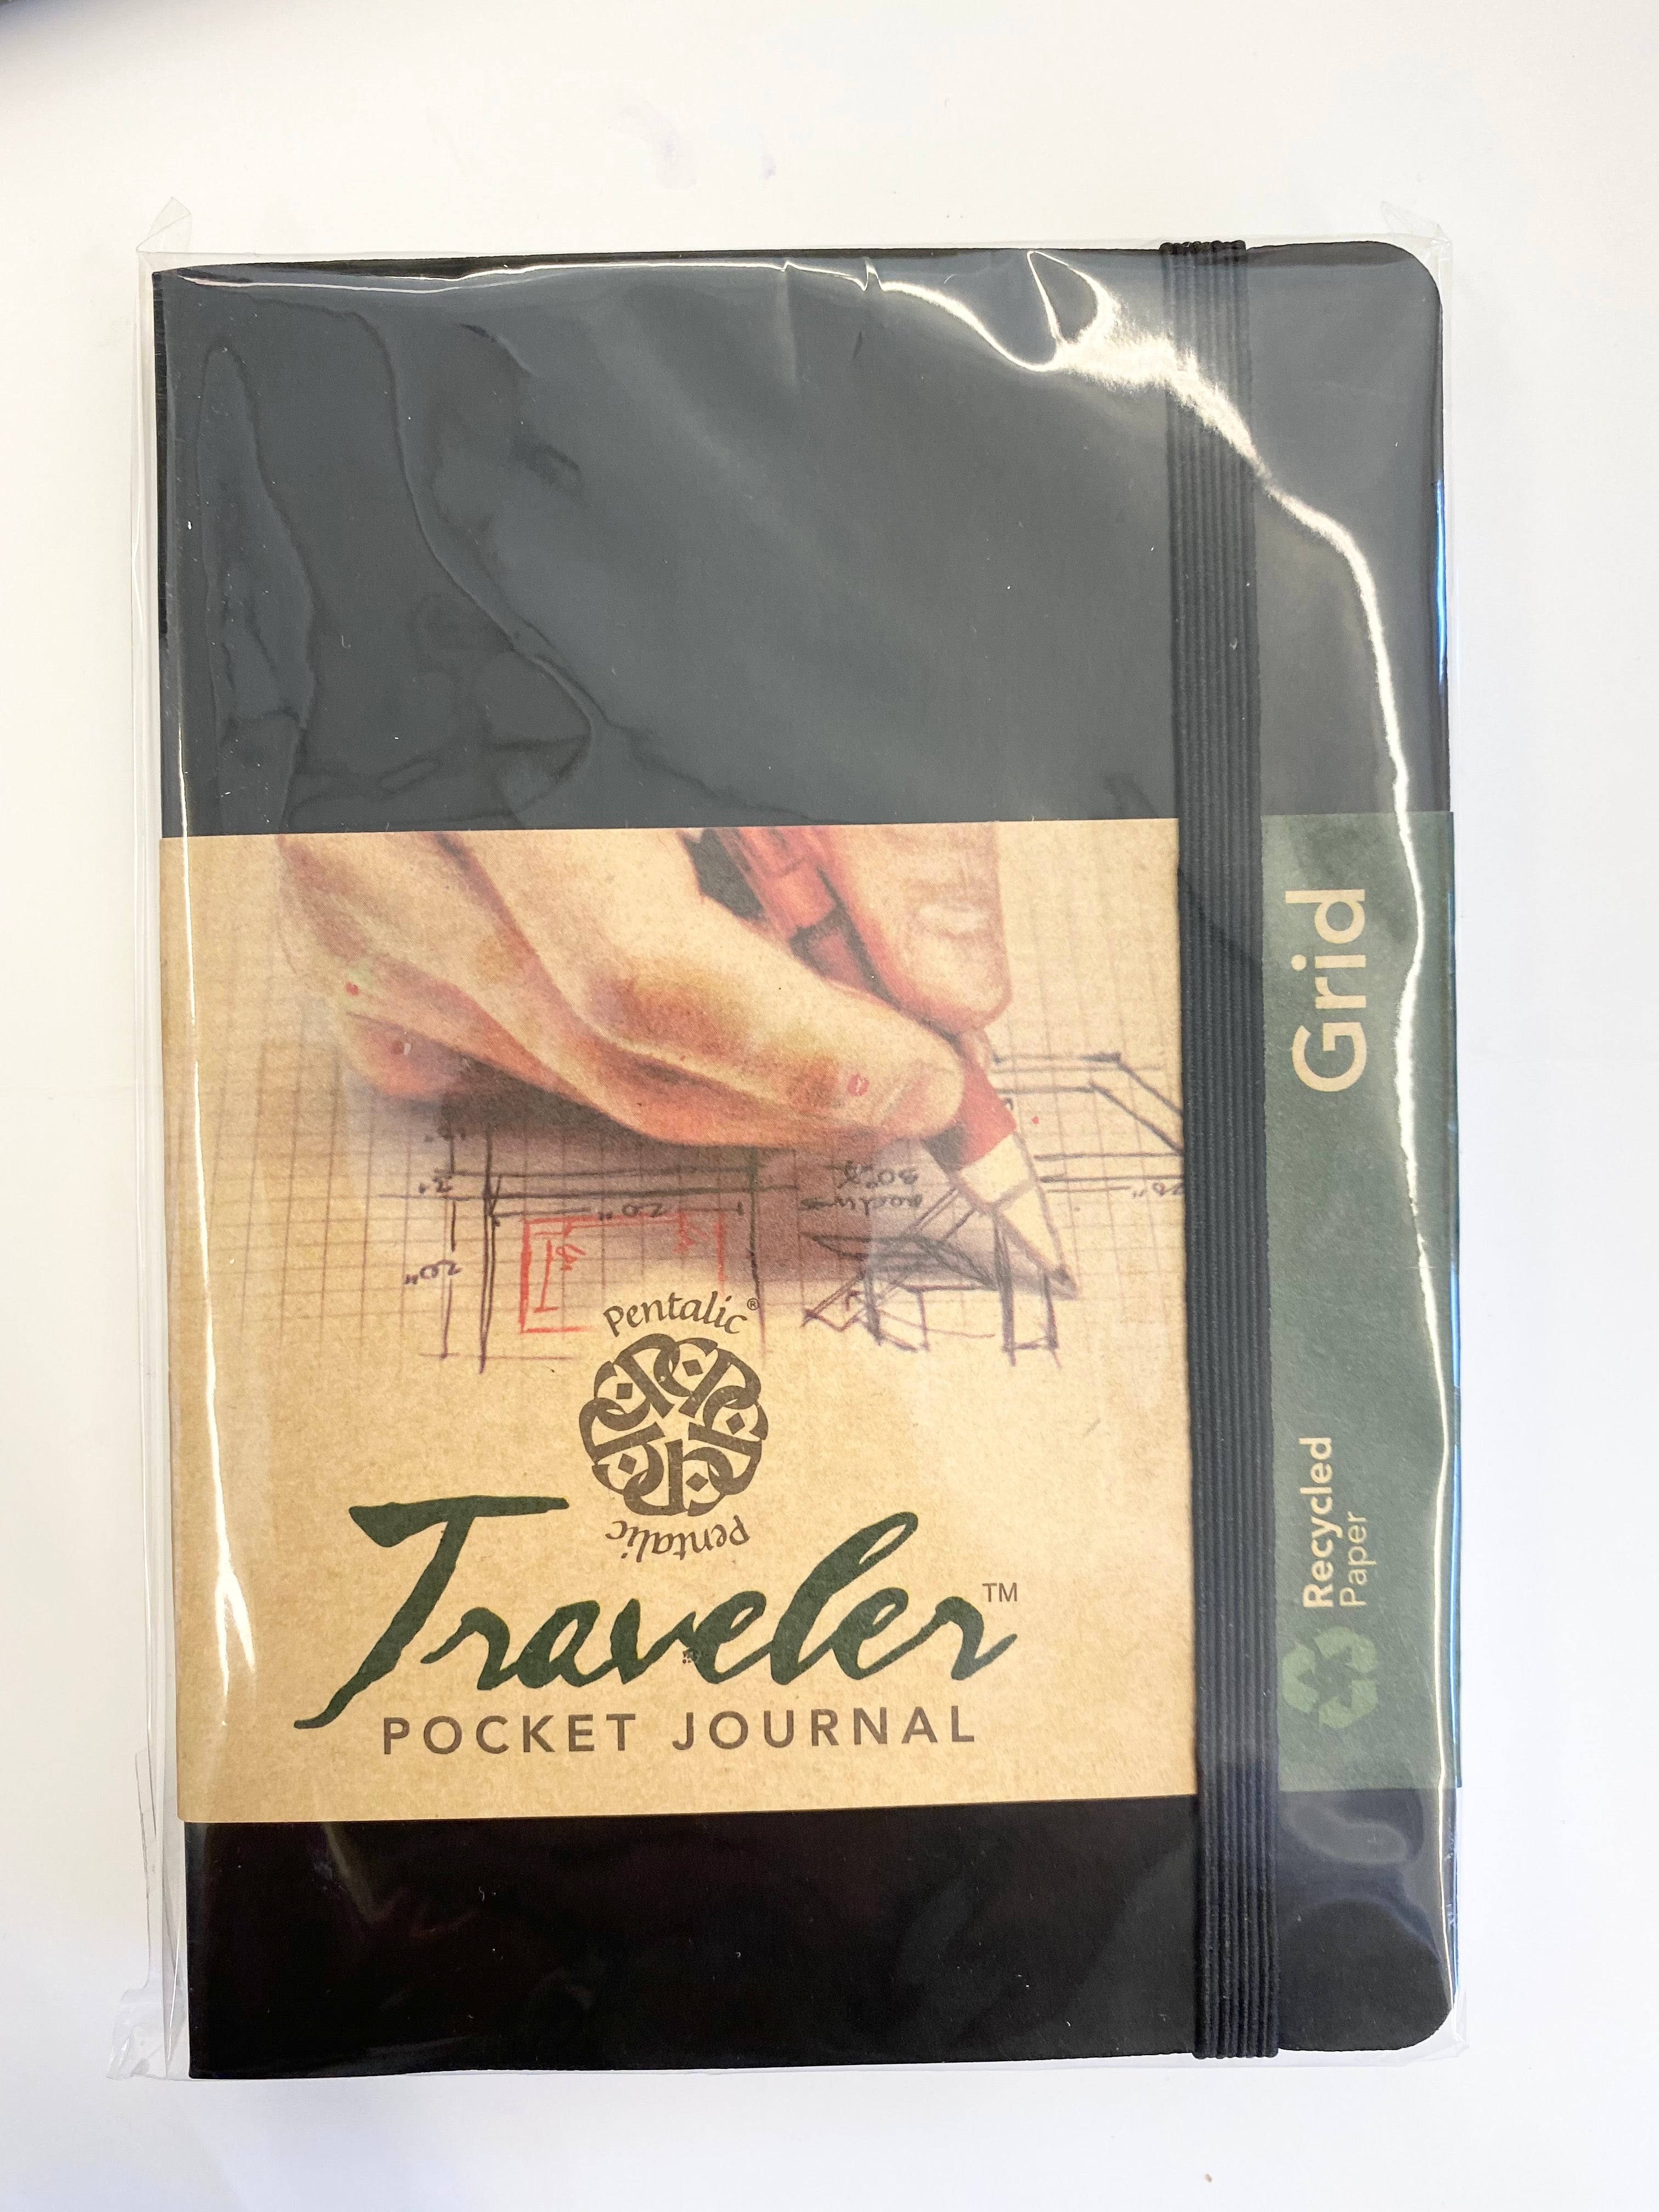 DRAWING SKETCHBOOKS & JOURNALS - Pentalic traveler pocket journal